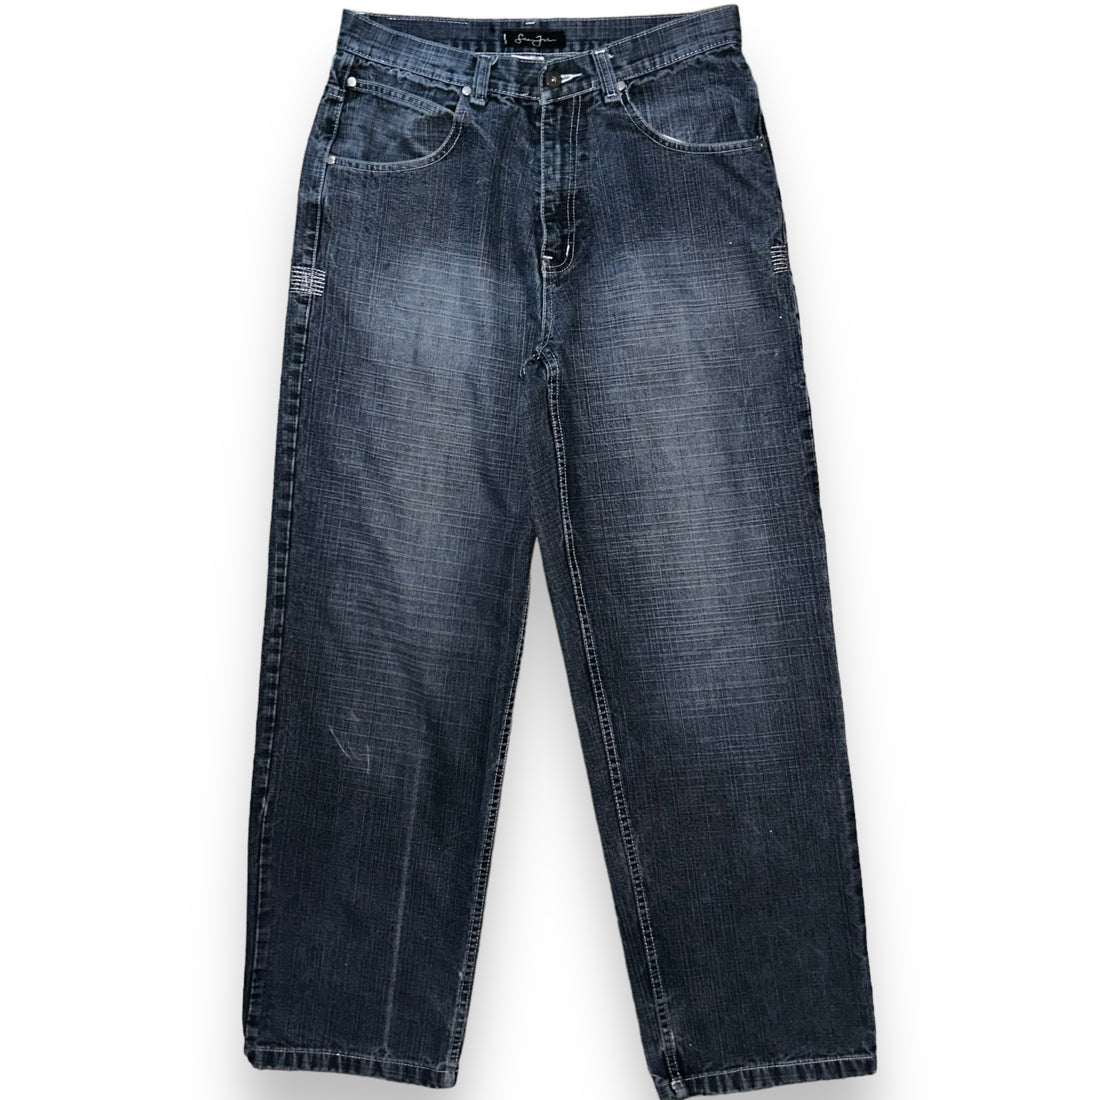 Baggy jeans Sean John Vintage  (32 USA  M)